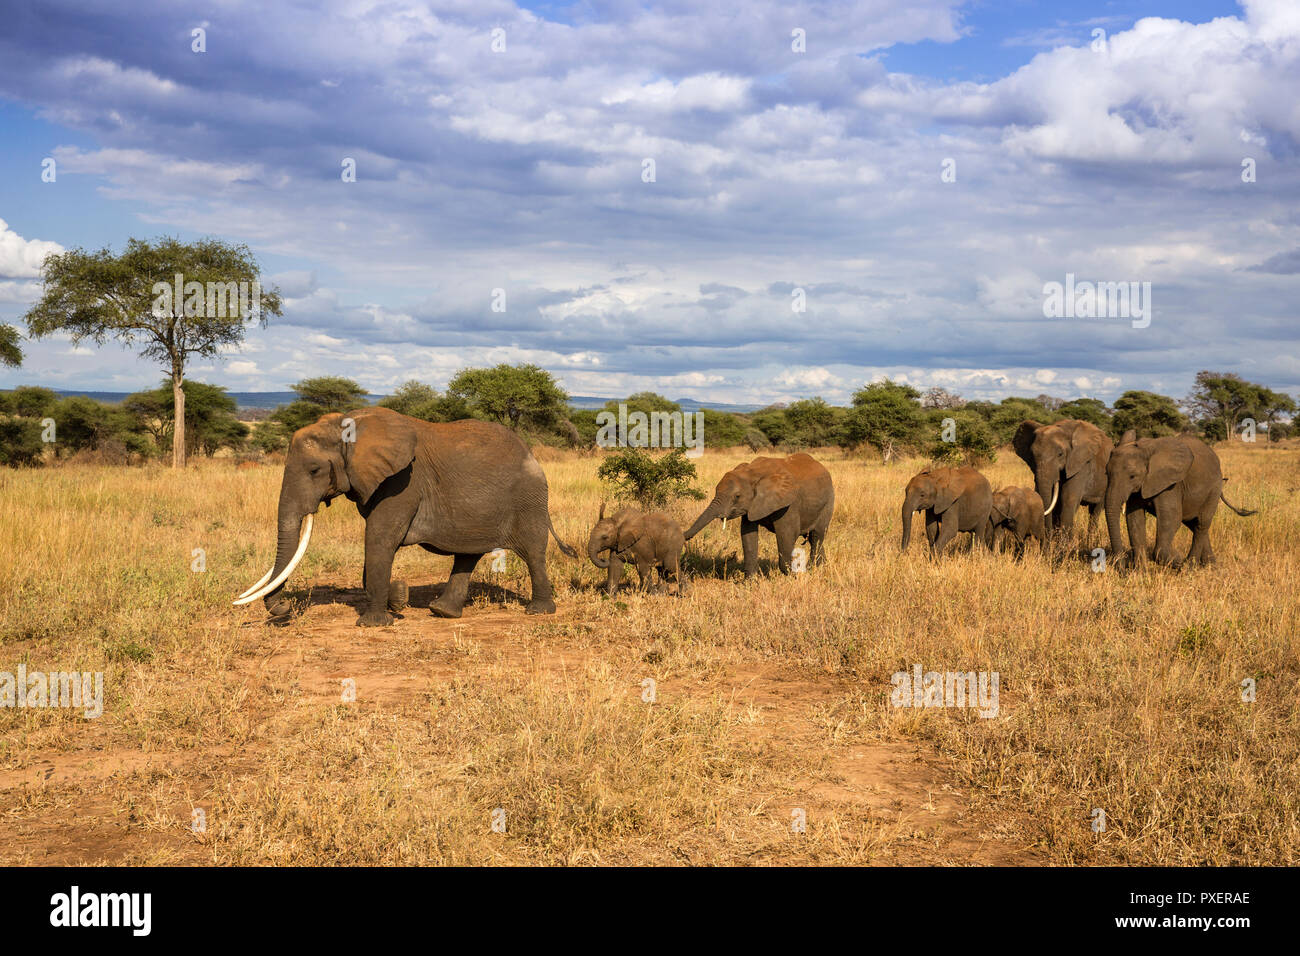 Savanna Elephants of Tarangire National Park, Tanzania Stock Photo